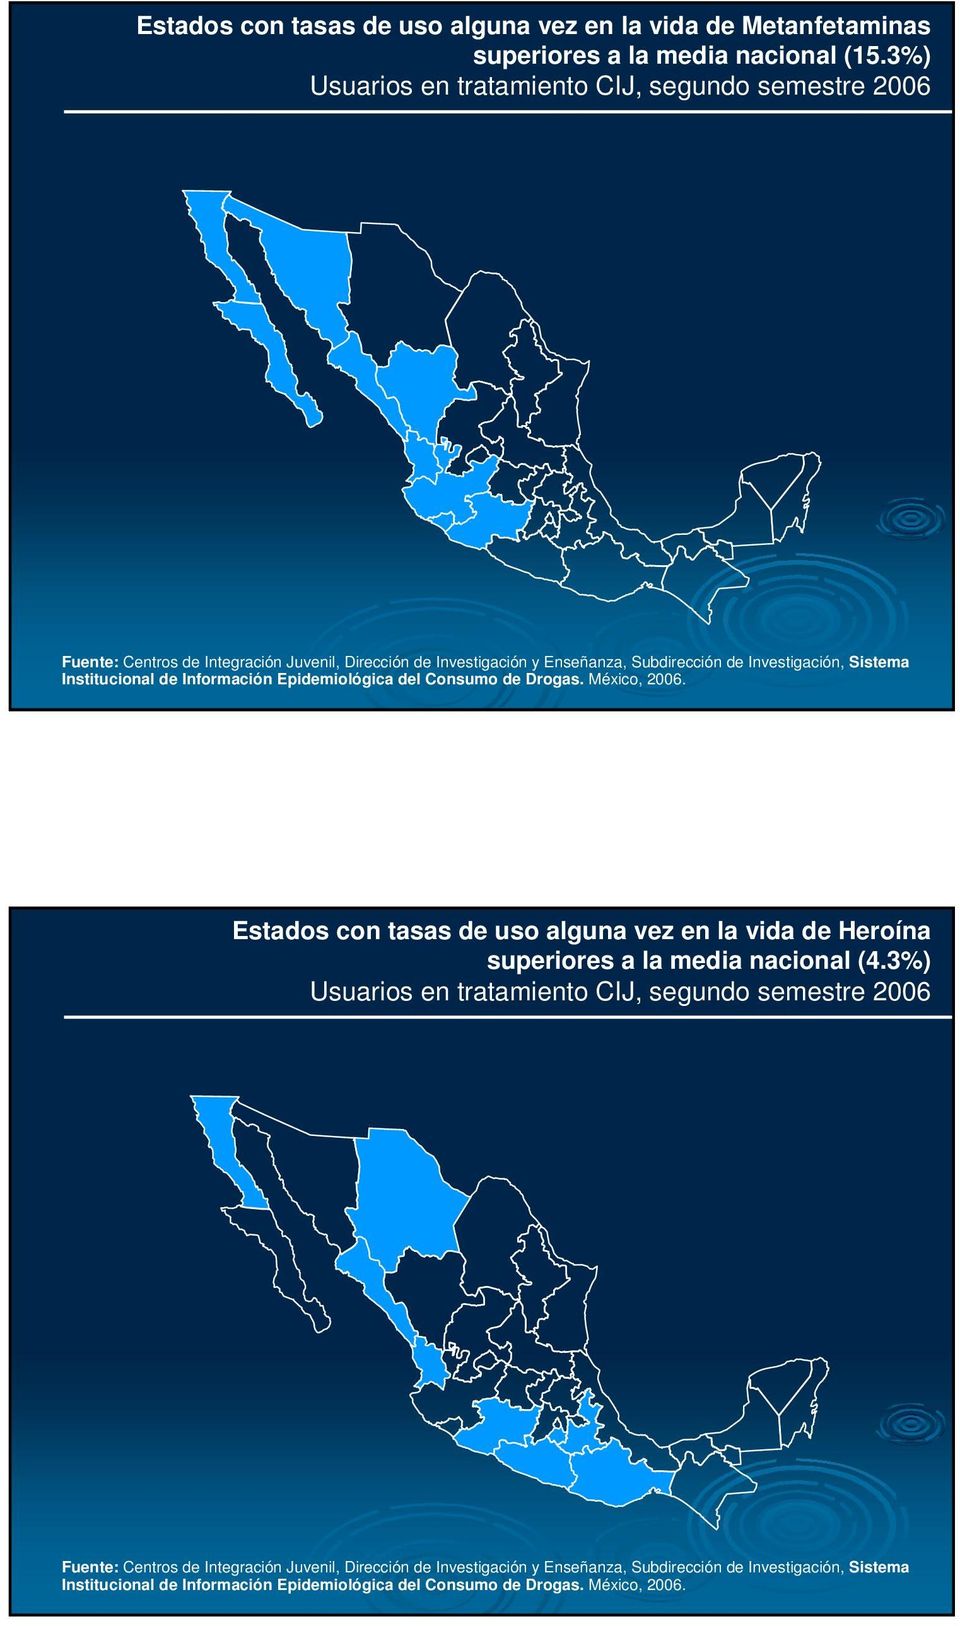 Institucional de Información Epidemiológica del Consumo de Drogas. México, 2006. Estados con tasas de uso alguna vez en la vida de Heroína superiores a la media nacional (4.